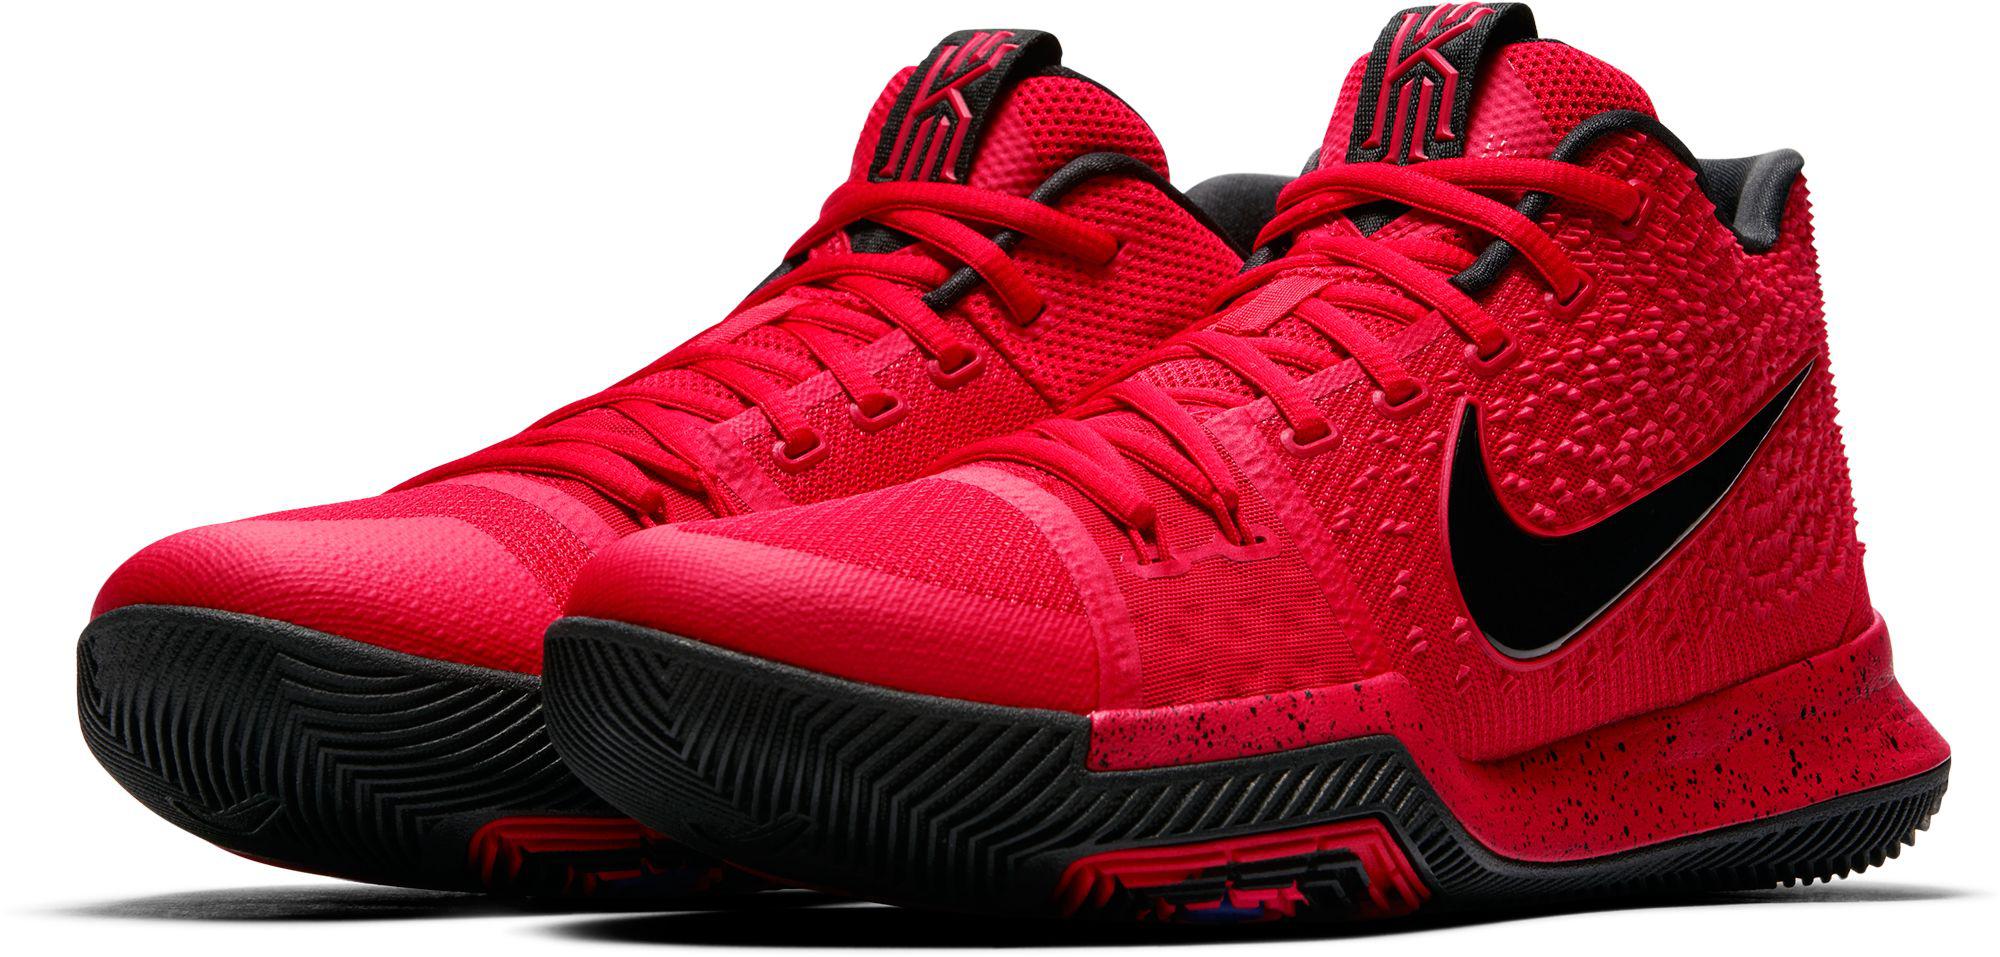 Nike Kyrie 3 Basketball Shoes